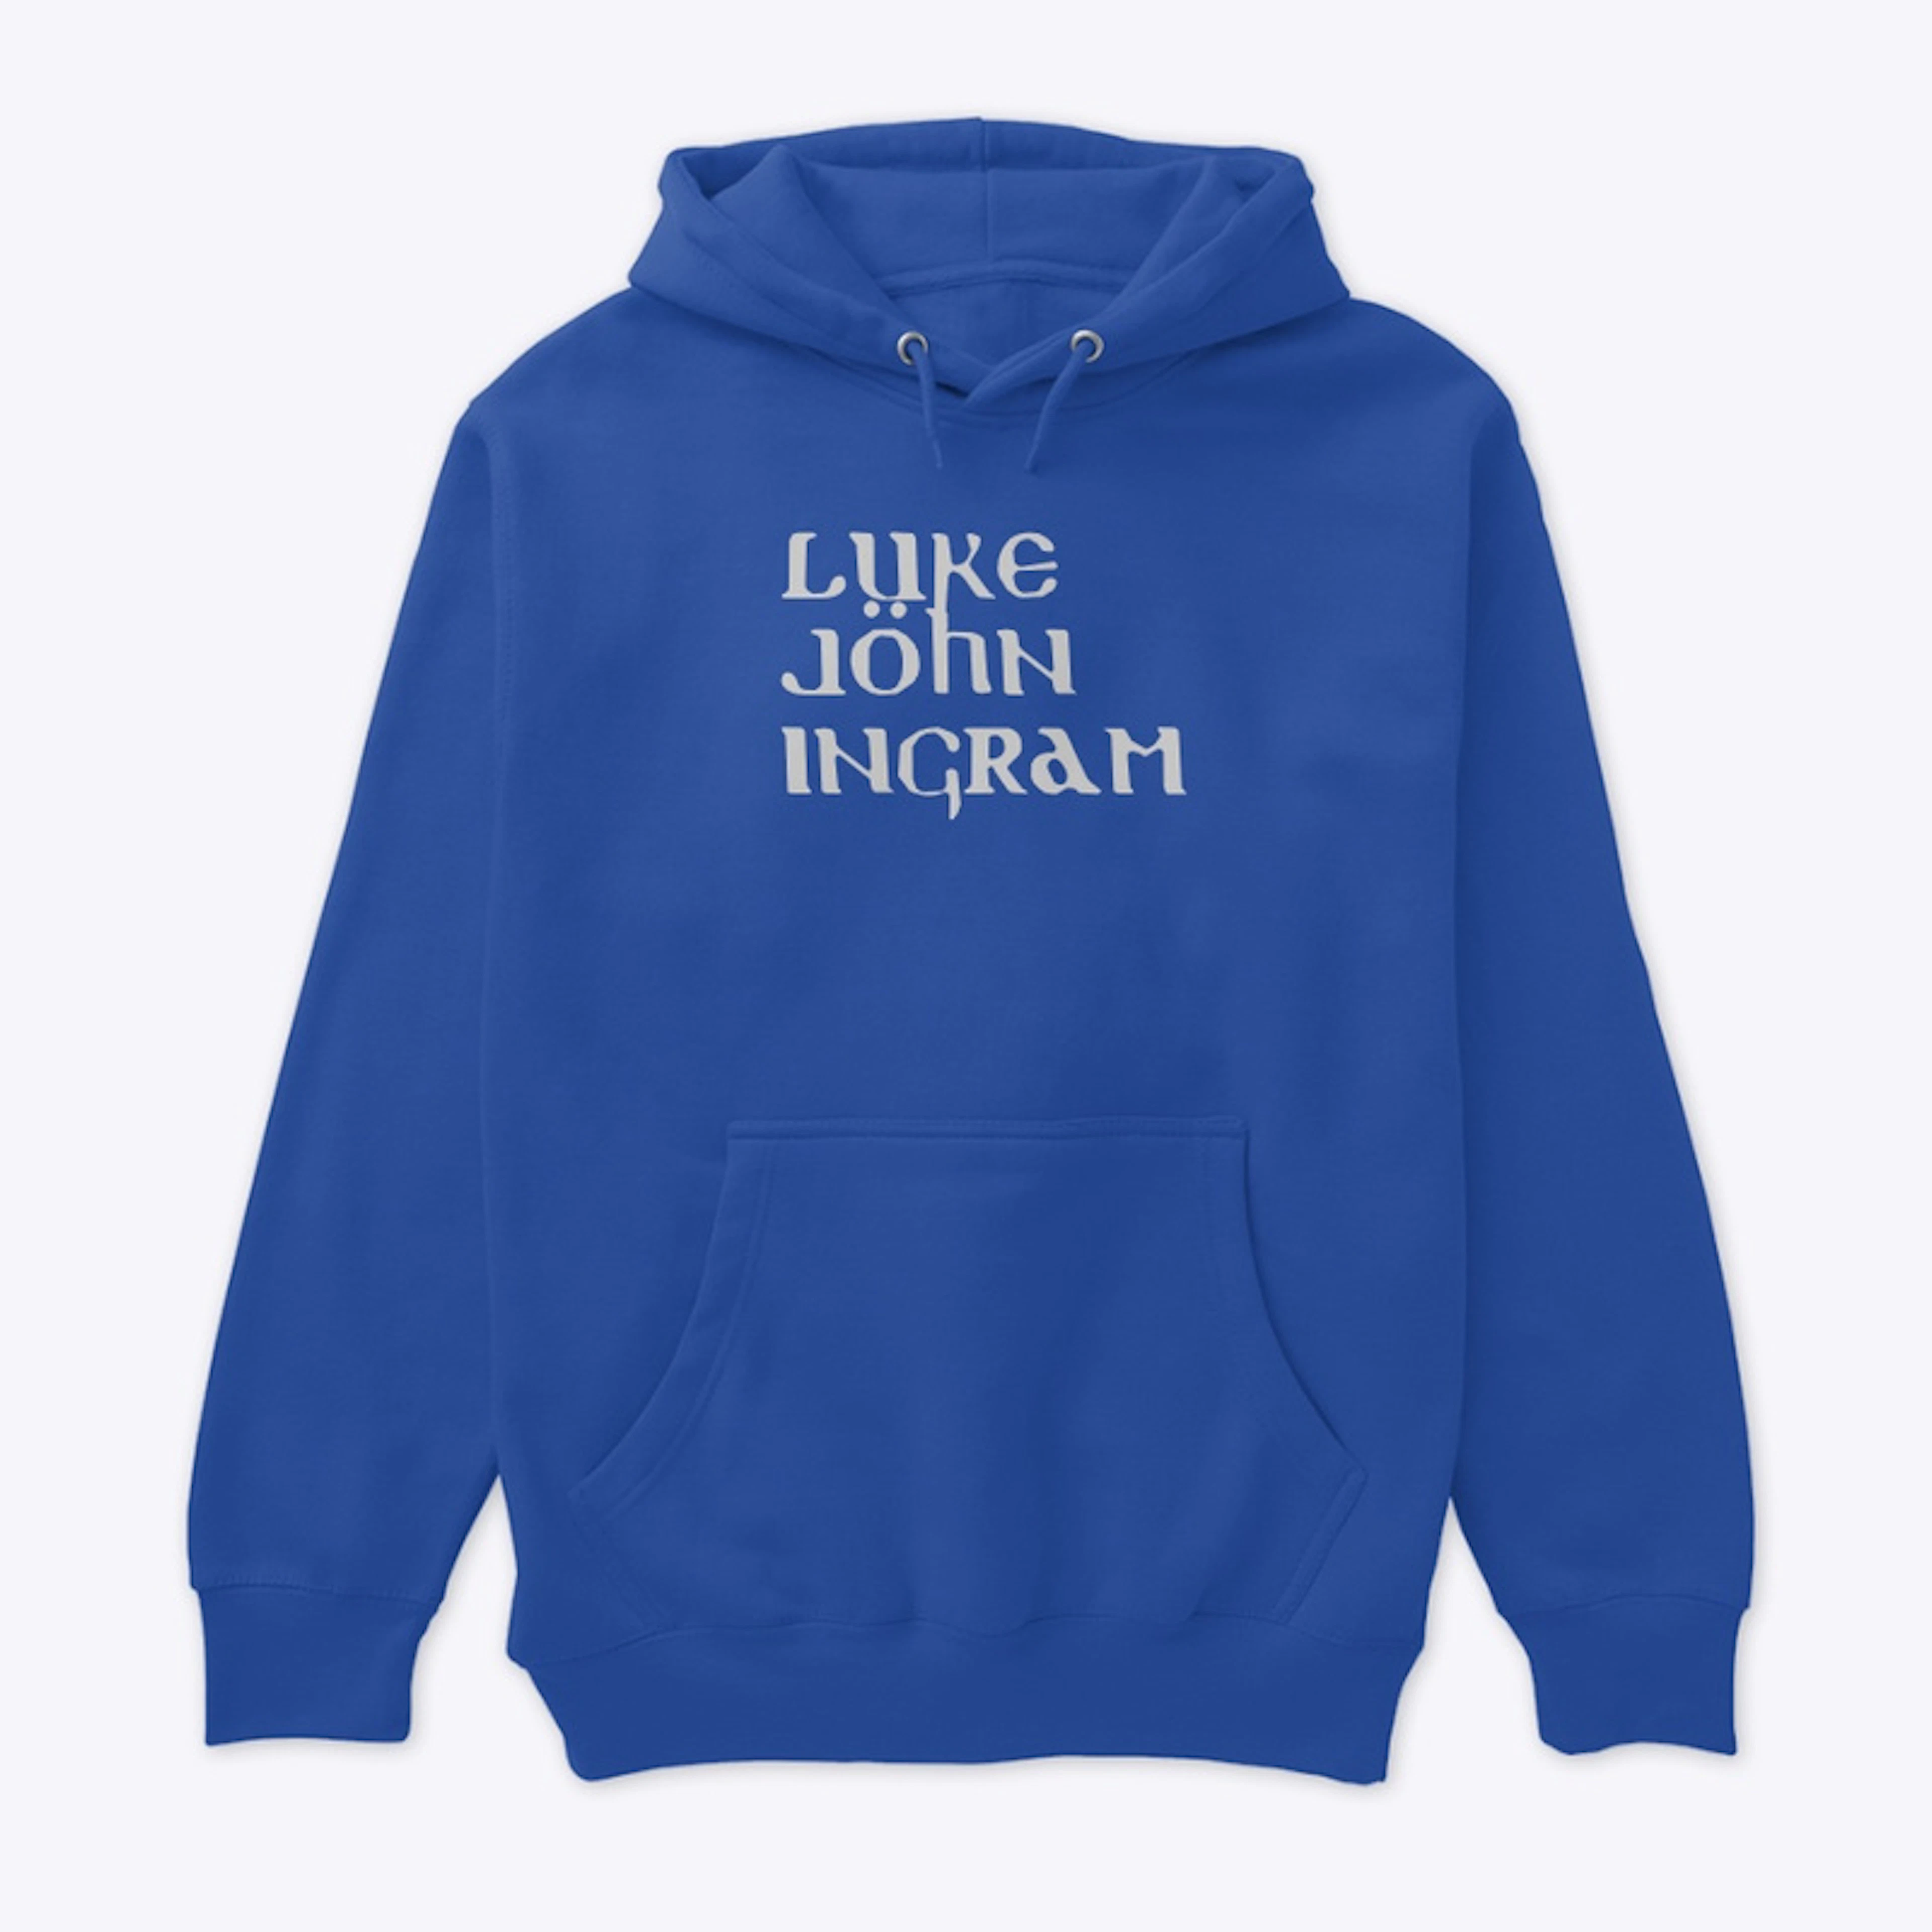 Luke John Ingram Official Merchandise 